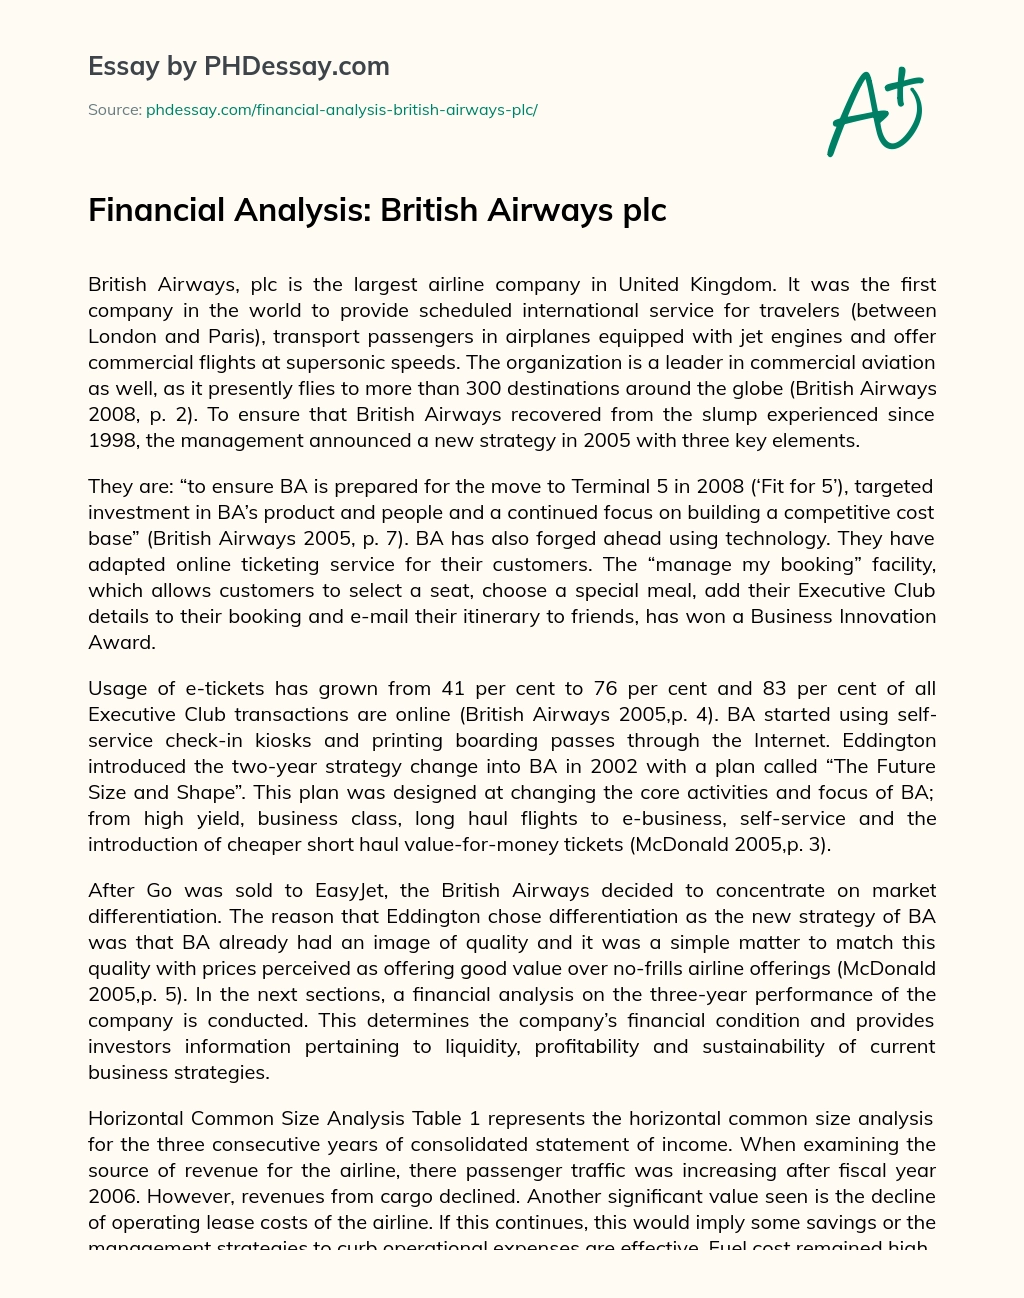 Financial Analysis: British Airways plc essay